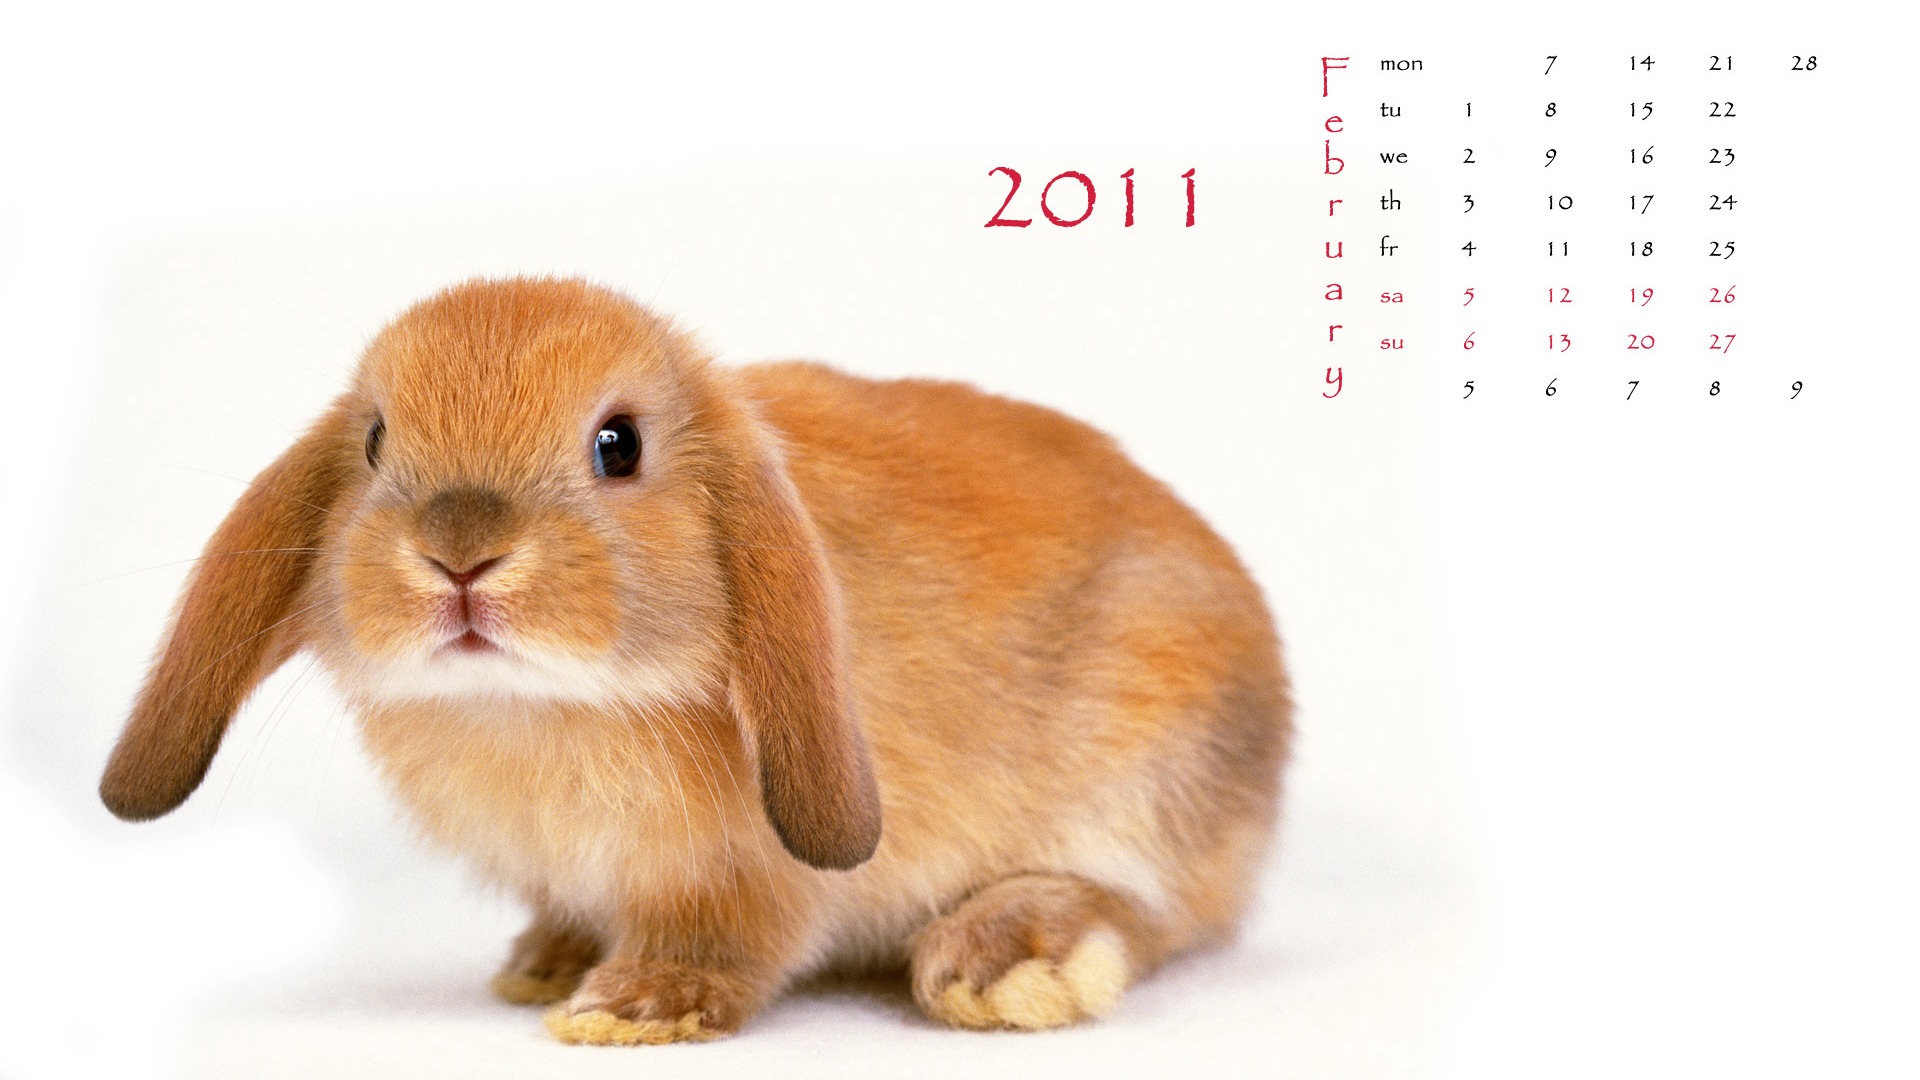 2011兔年日历 壁纸(一)1 - 1920x1080